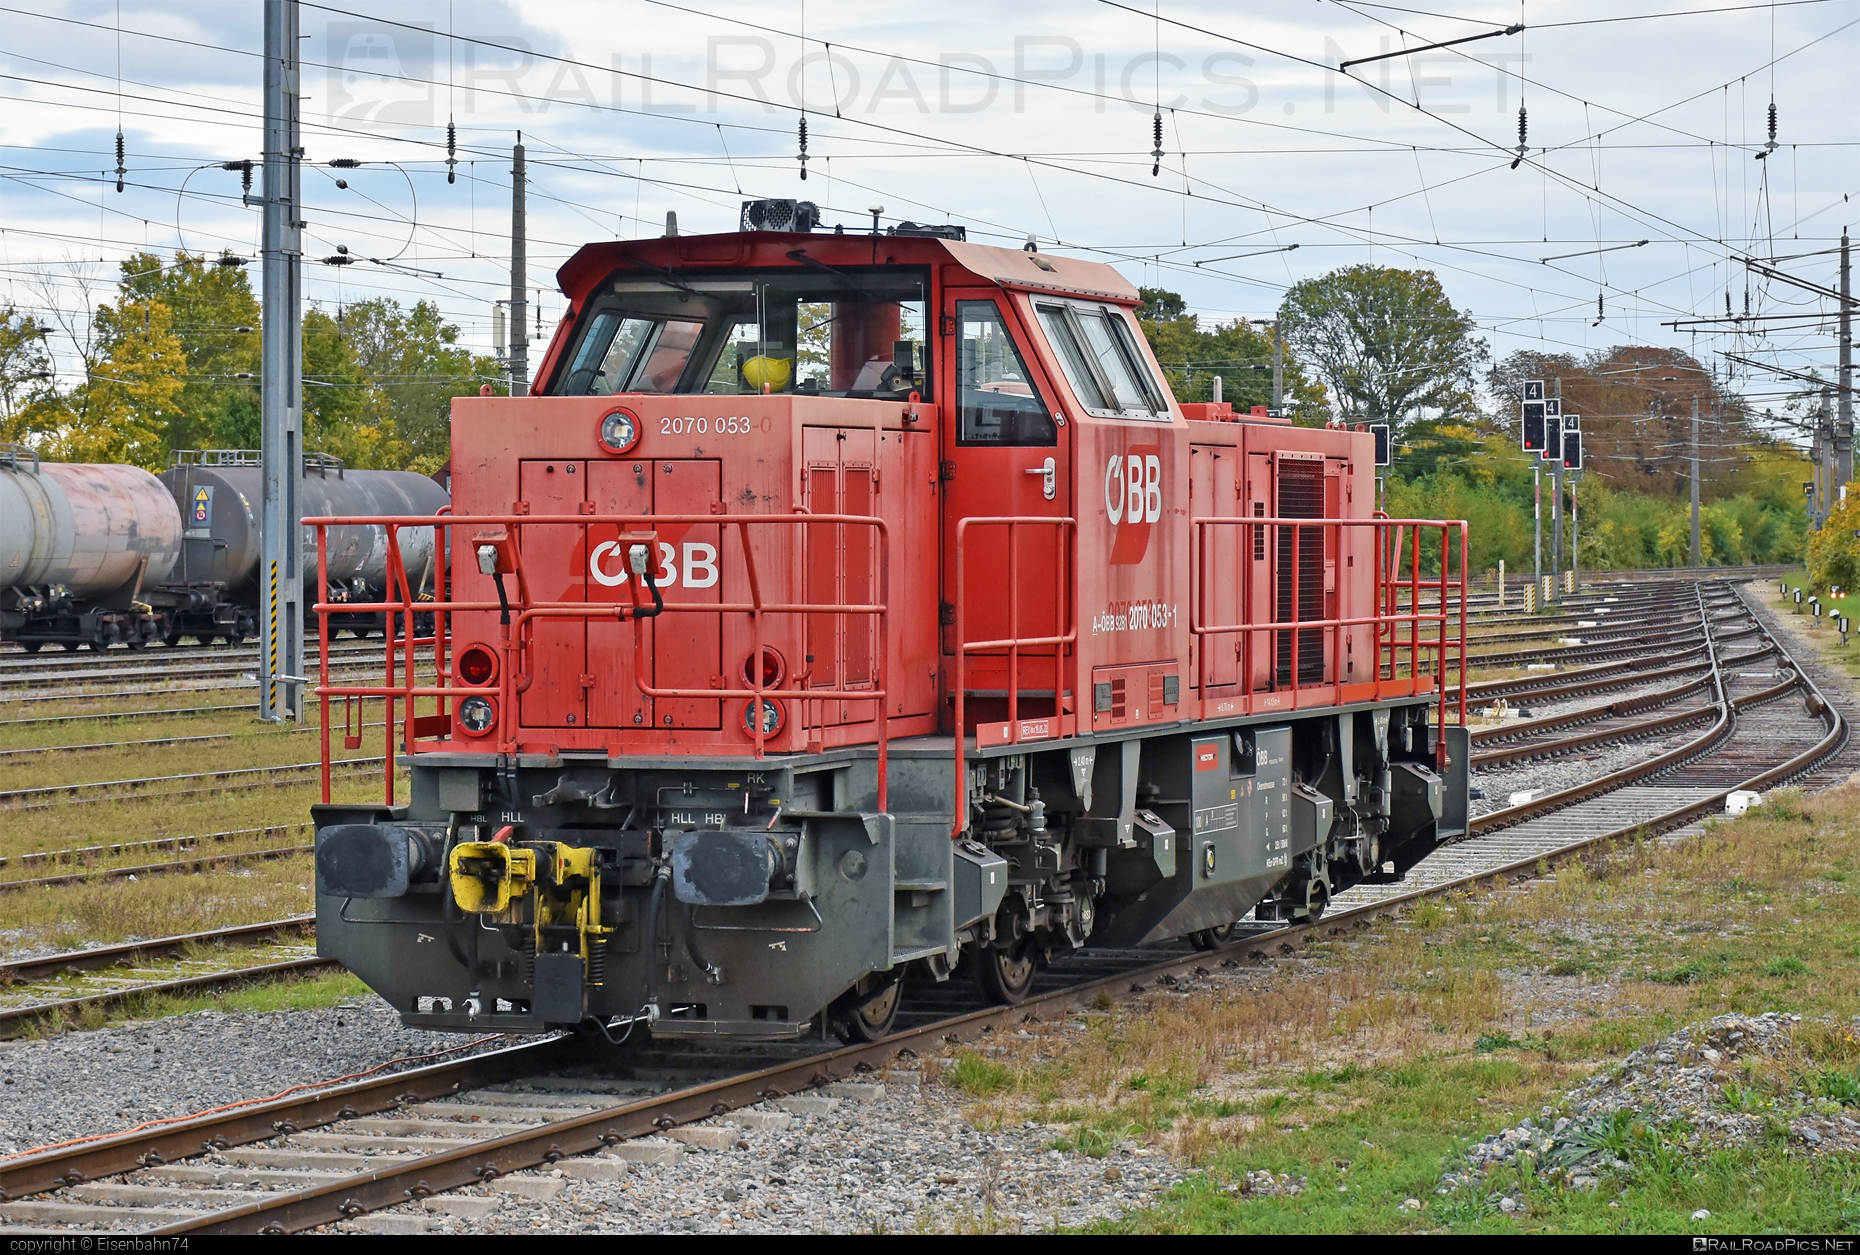 Vossloh G 800 BB - 2070 053 operated by Rail Cargo Austria AG #g800bb #makG800bb #obb #obbClass2070 #osterreichischebundesbahnen #rcw #vossloh #vosslohG800bb